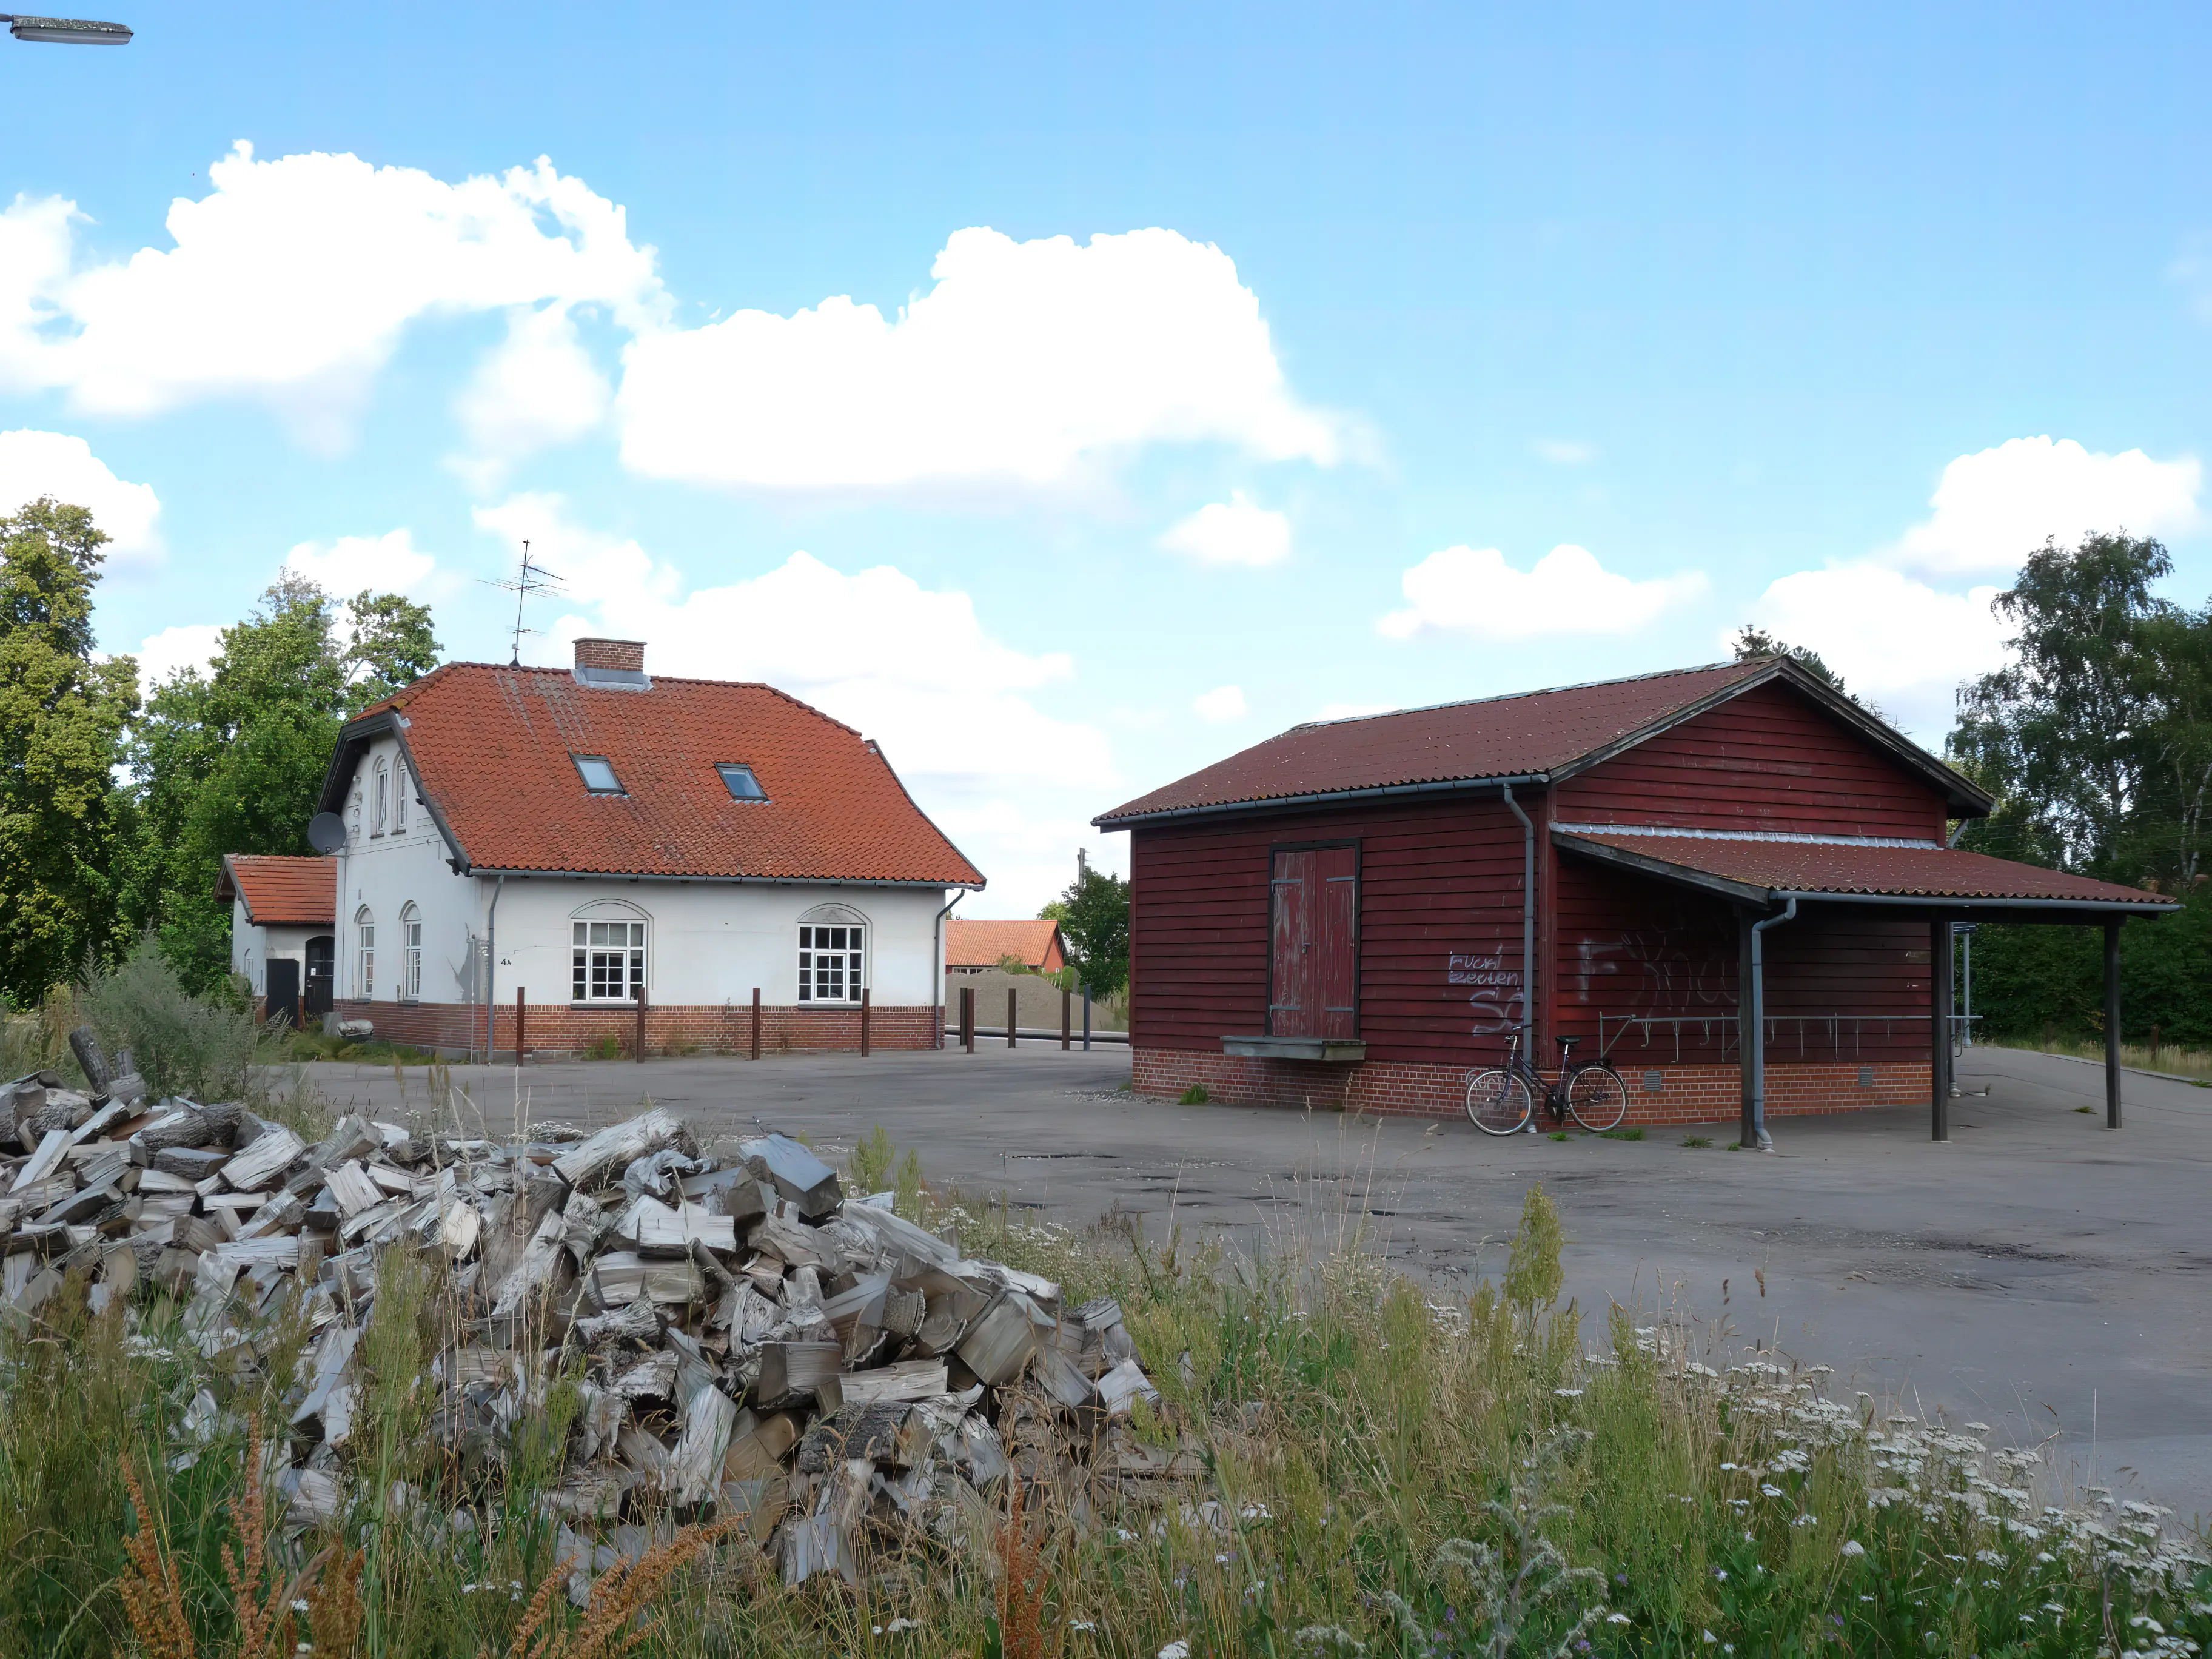 Billede af Kirke Eskilstrup Station.